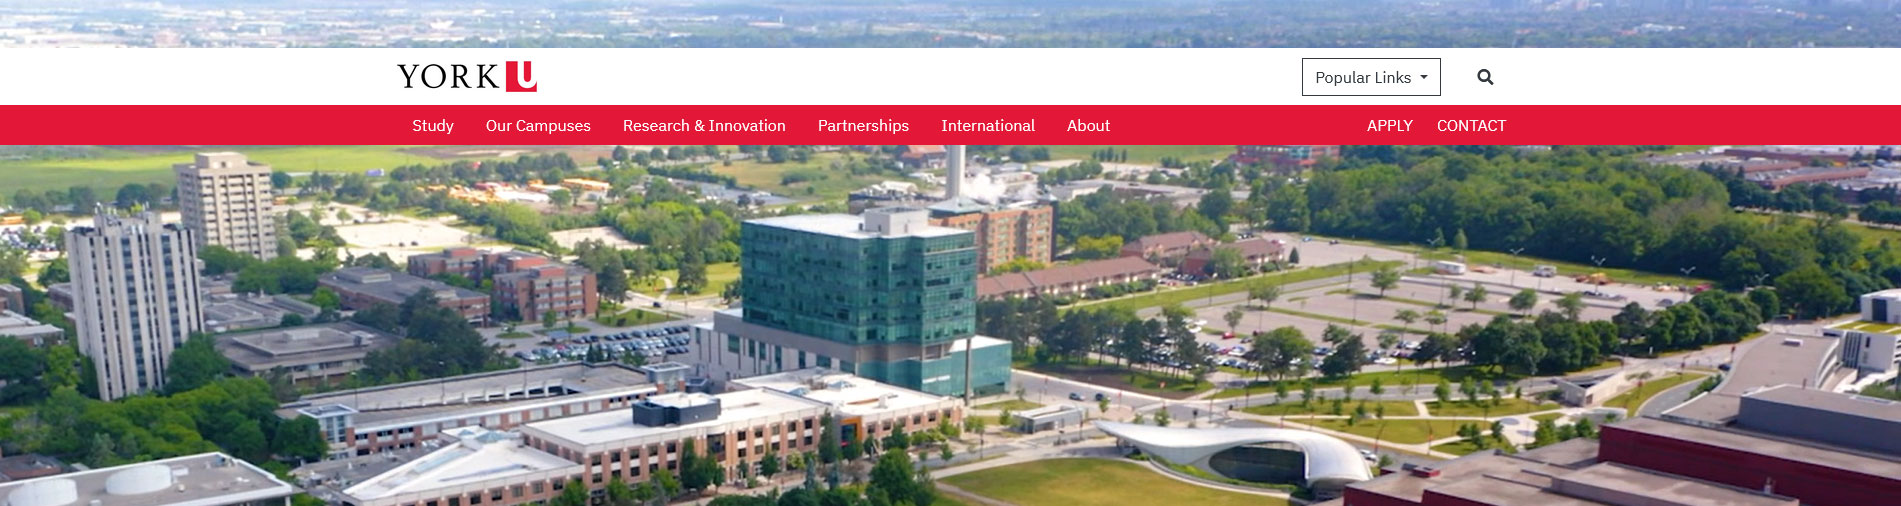 دانشگاه York در تورنتو کانادا